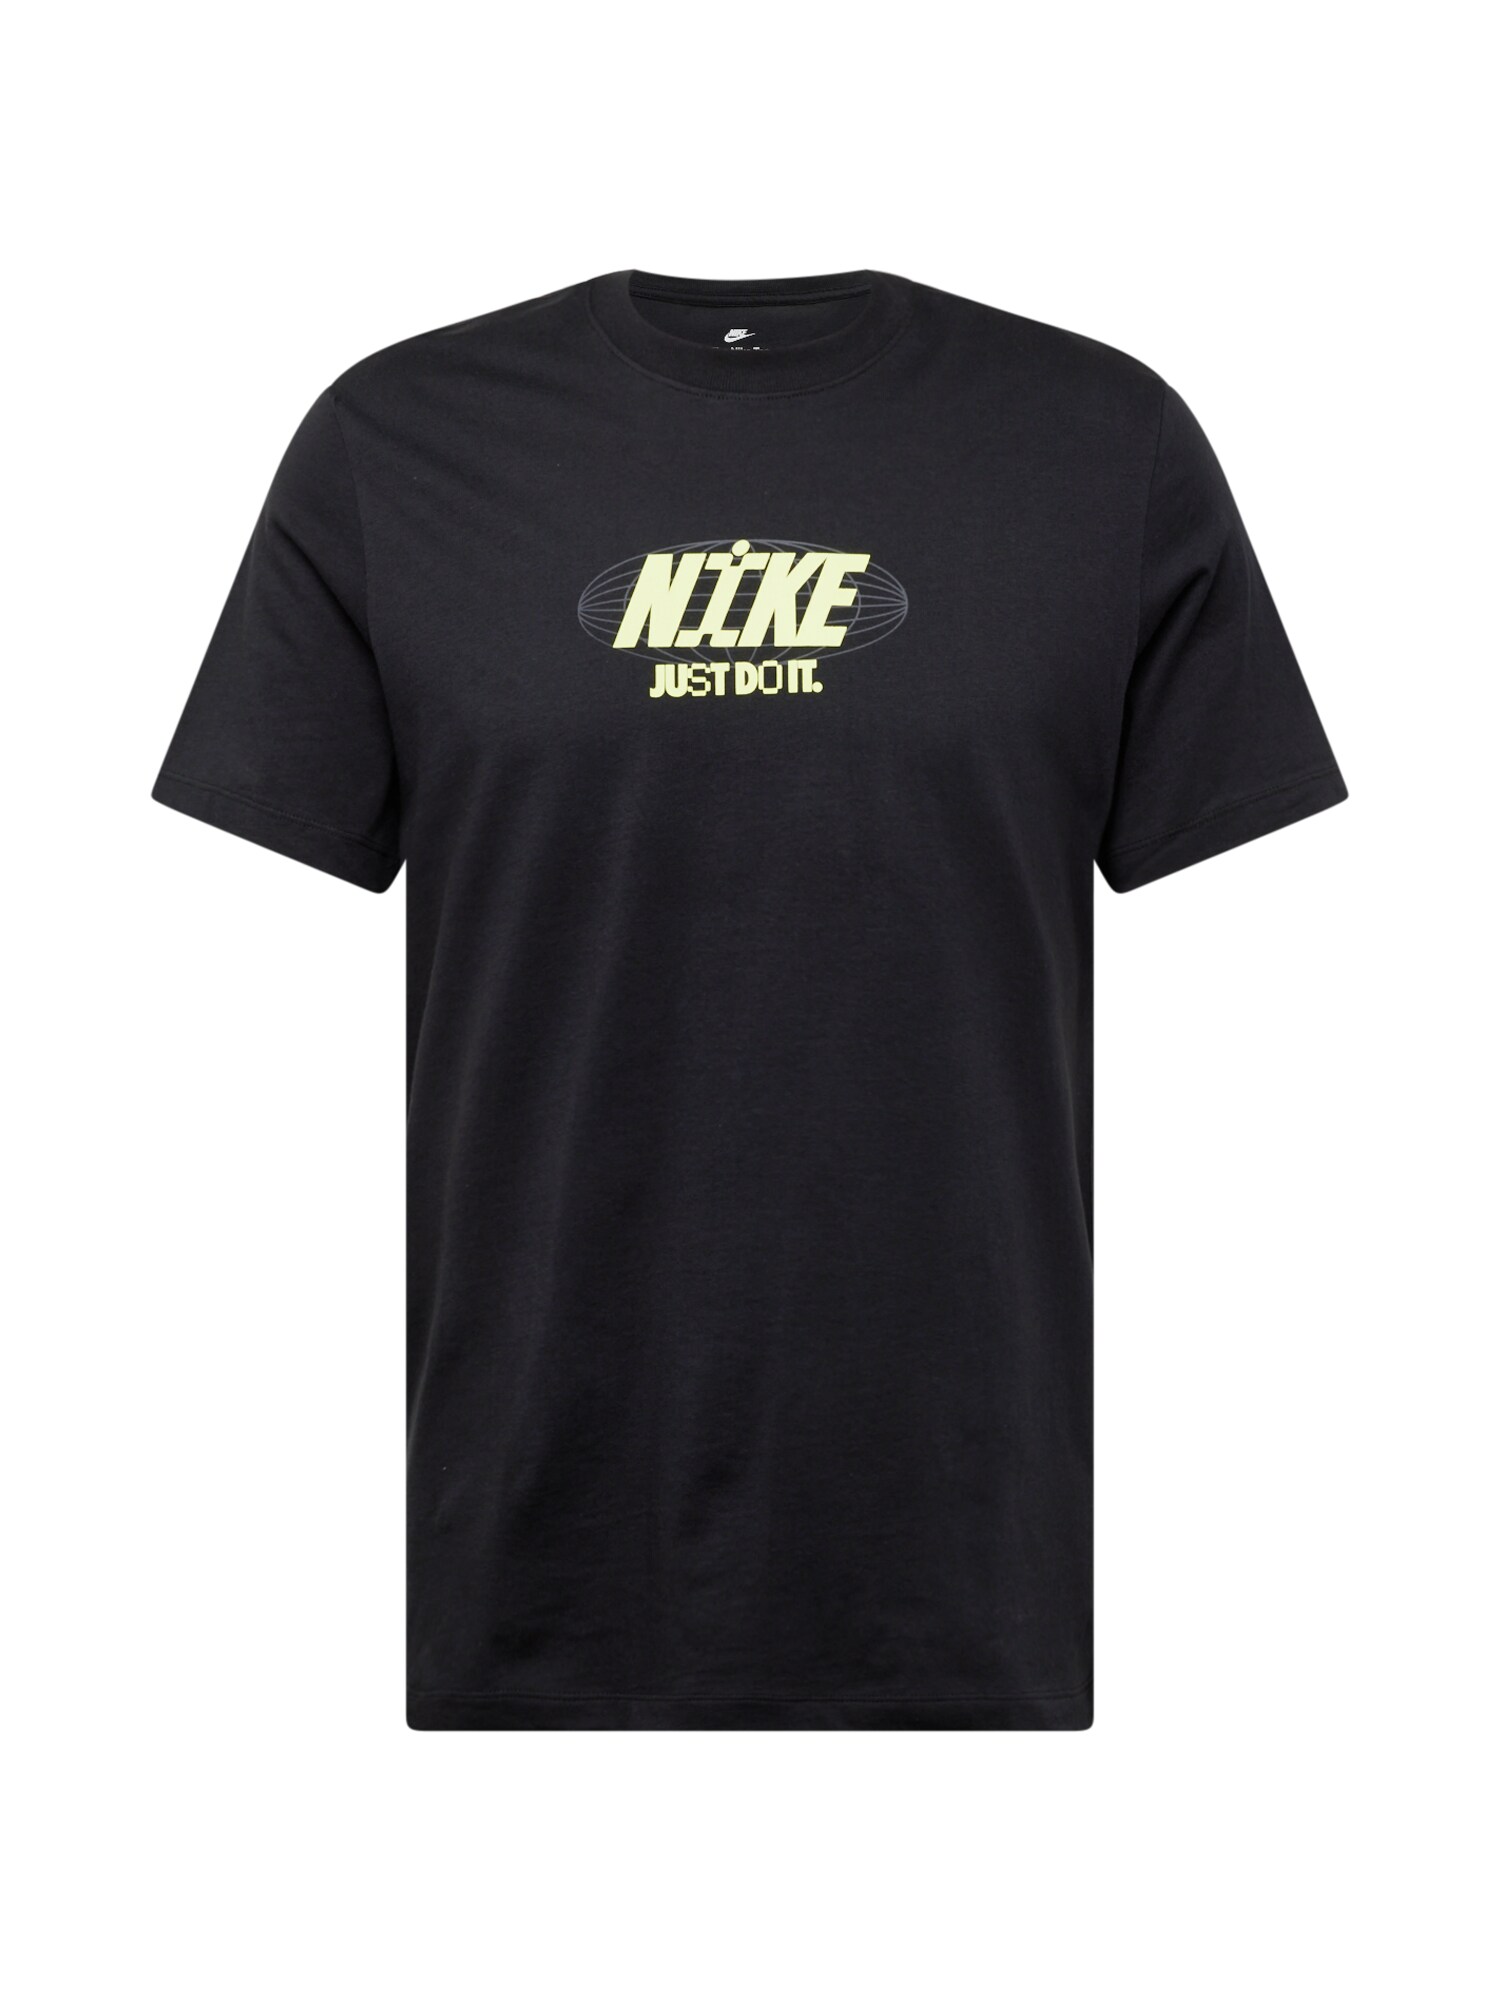 Nike Sportswear Marškinėliai pastelinė geltona / šviesiai pilka / juoda